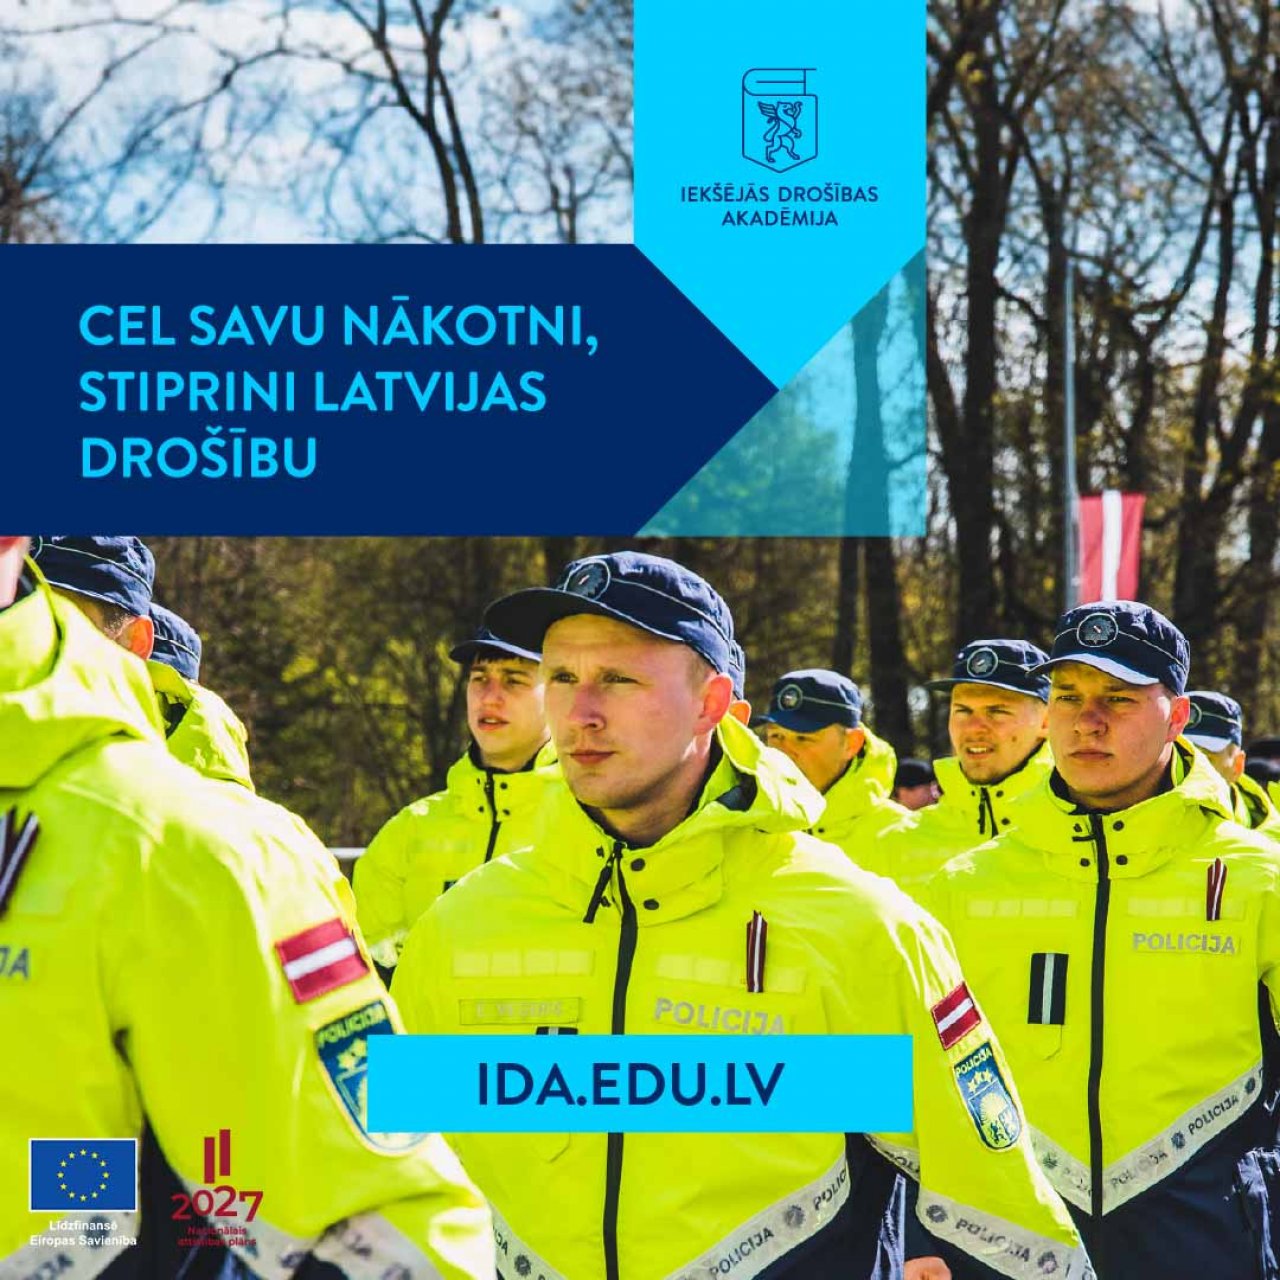 Cel savu nākotni – stiprini Latvijas drošību!